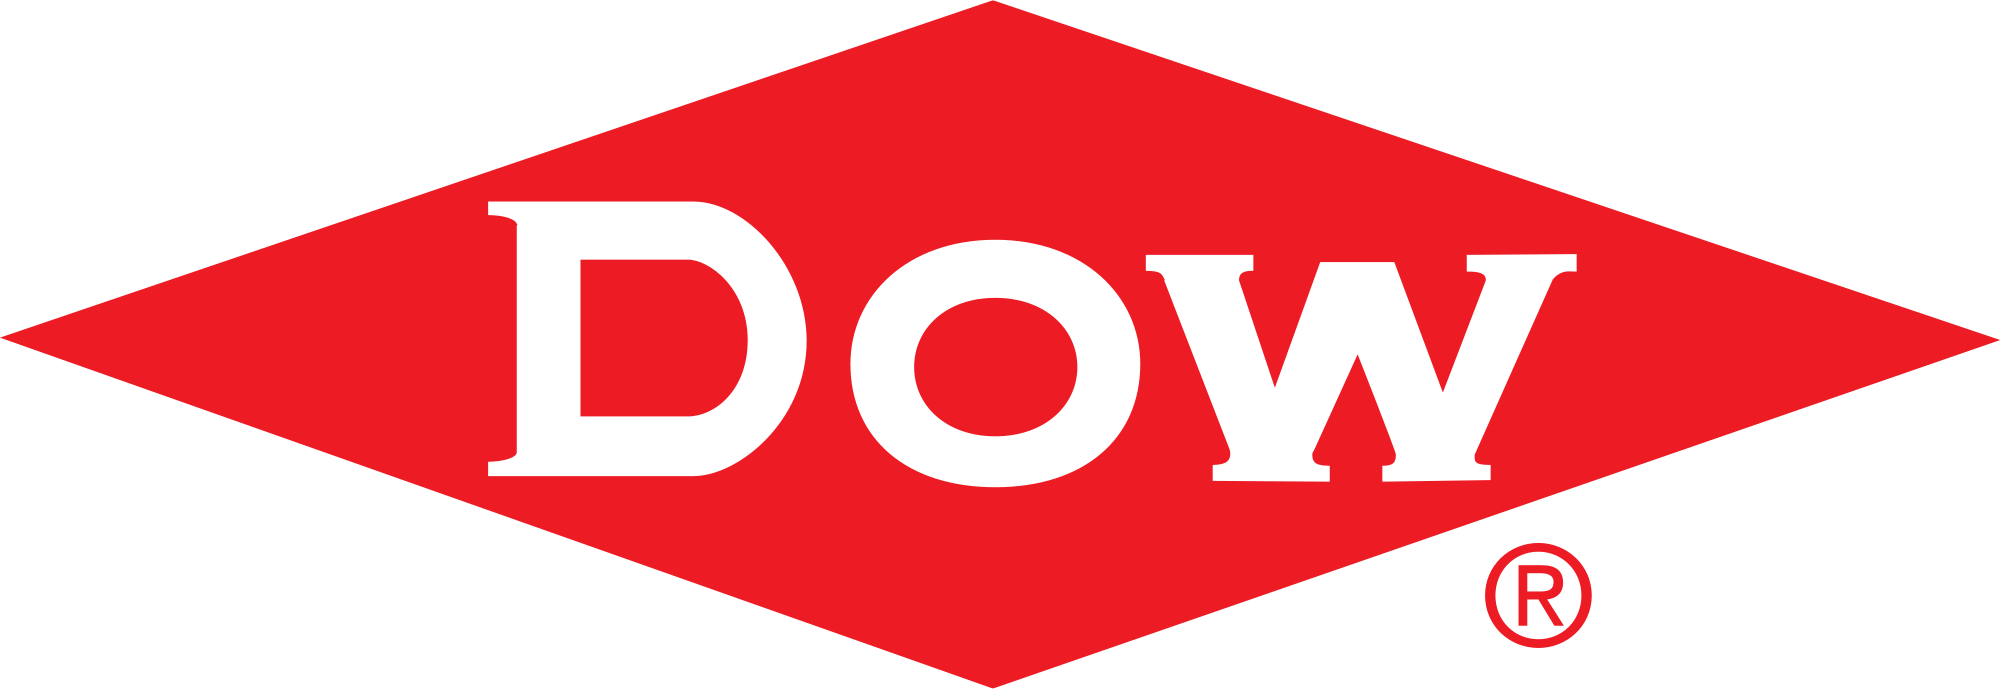 Dow logo TRANSPARENT (1).png